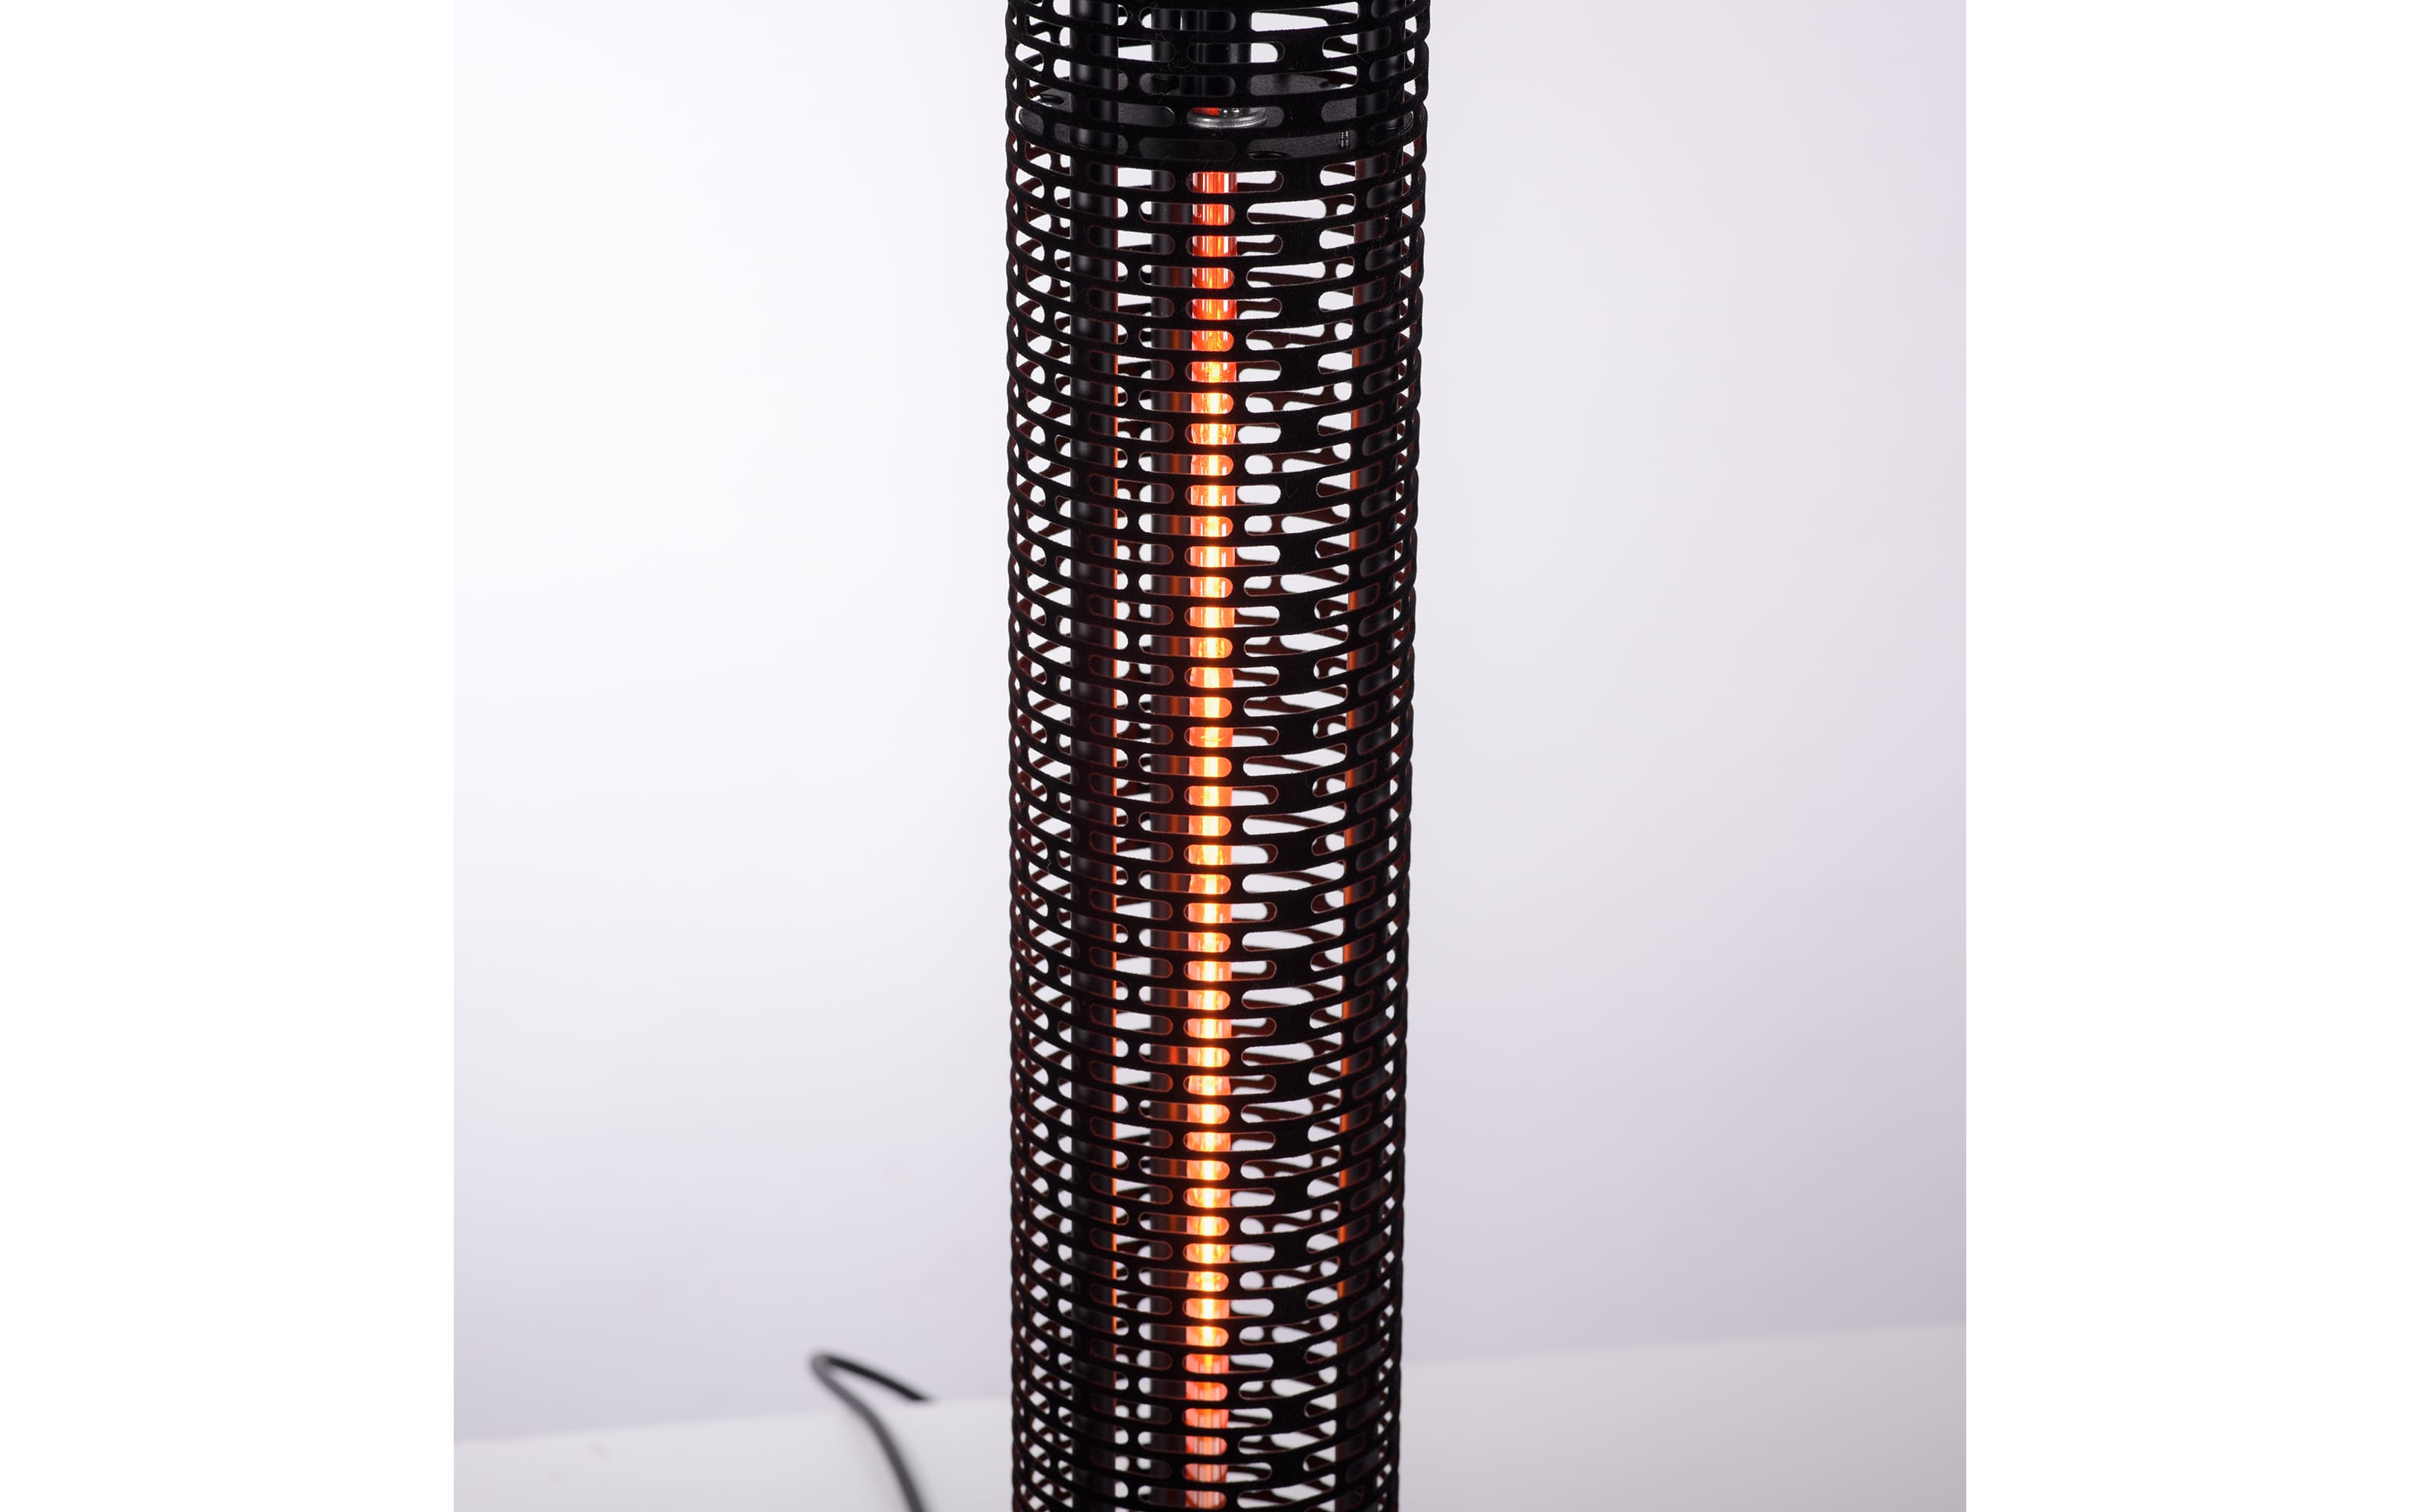 Stand-Heizstrahler Glow IP55 in schwarz, 110 cm